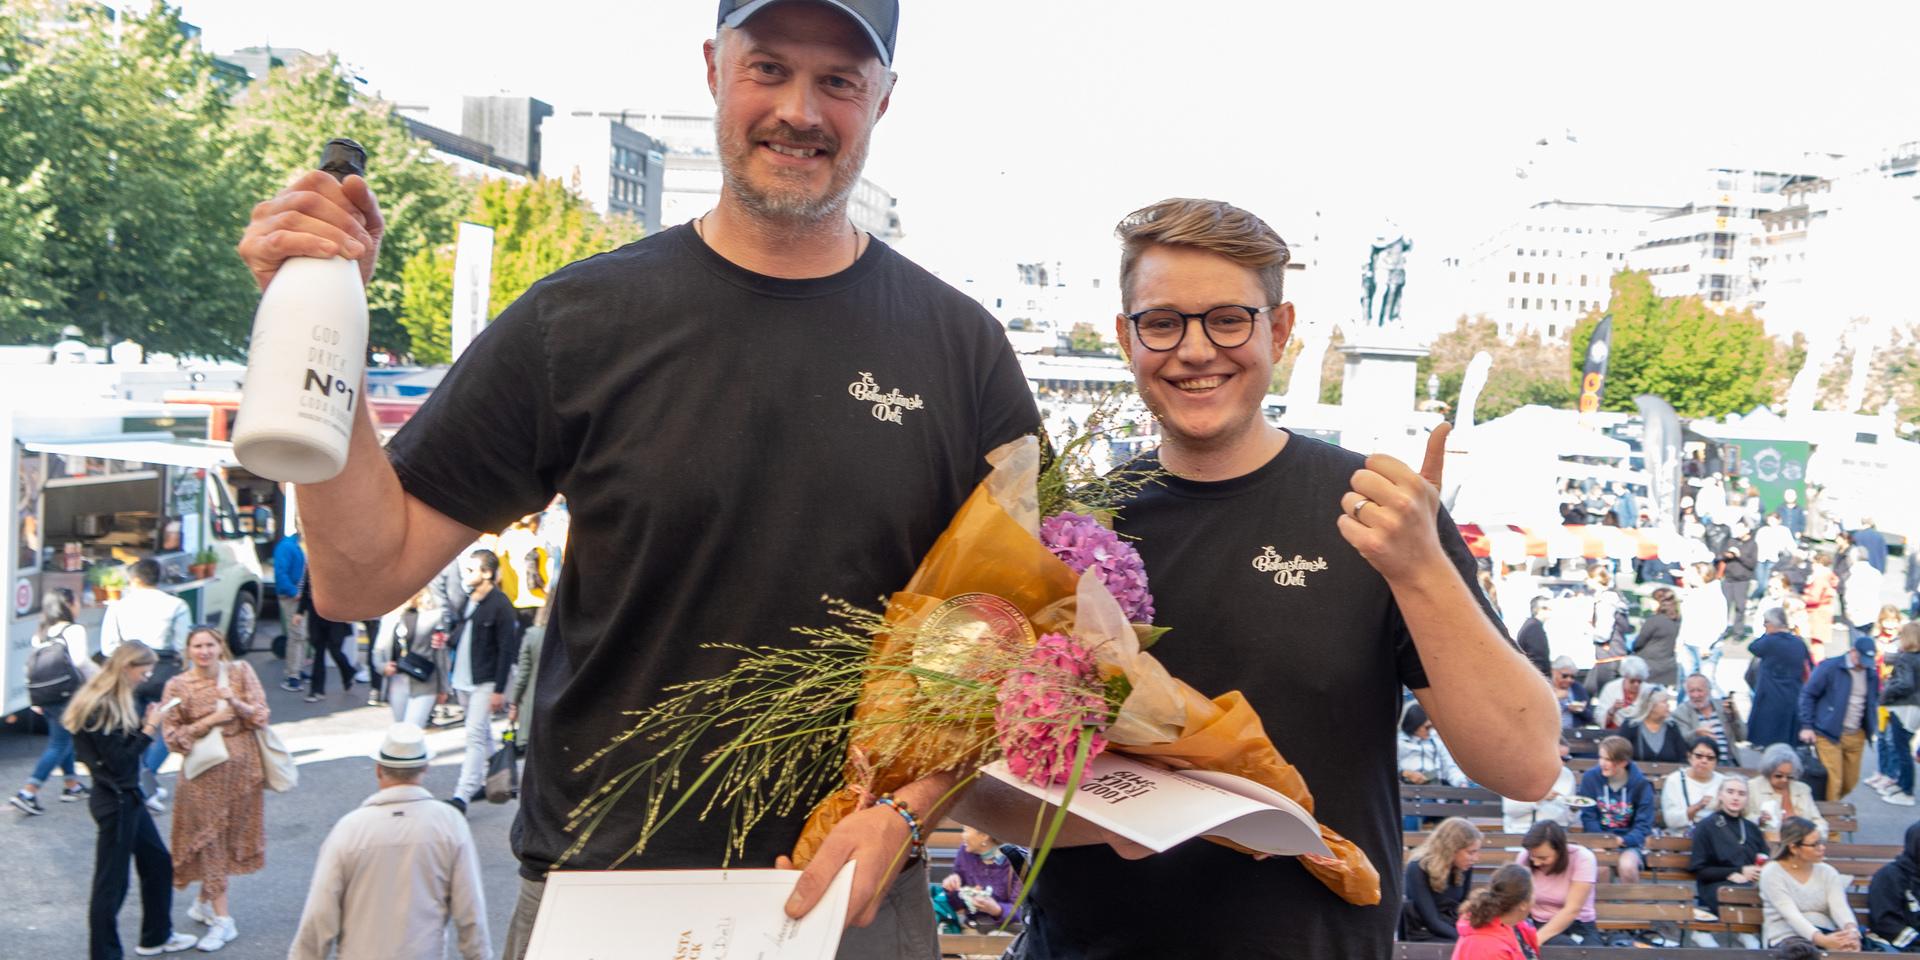 En Bohuslänsk Deli vann Food Truck-SM 2019. Diplom togs emot av Niklas Krafft och Anthon Berg.